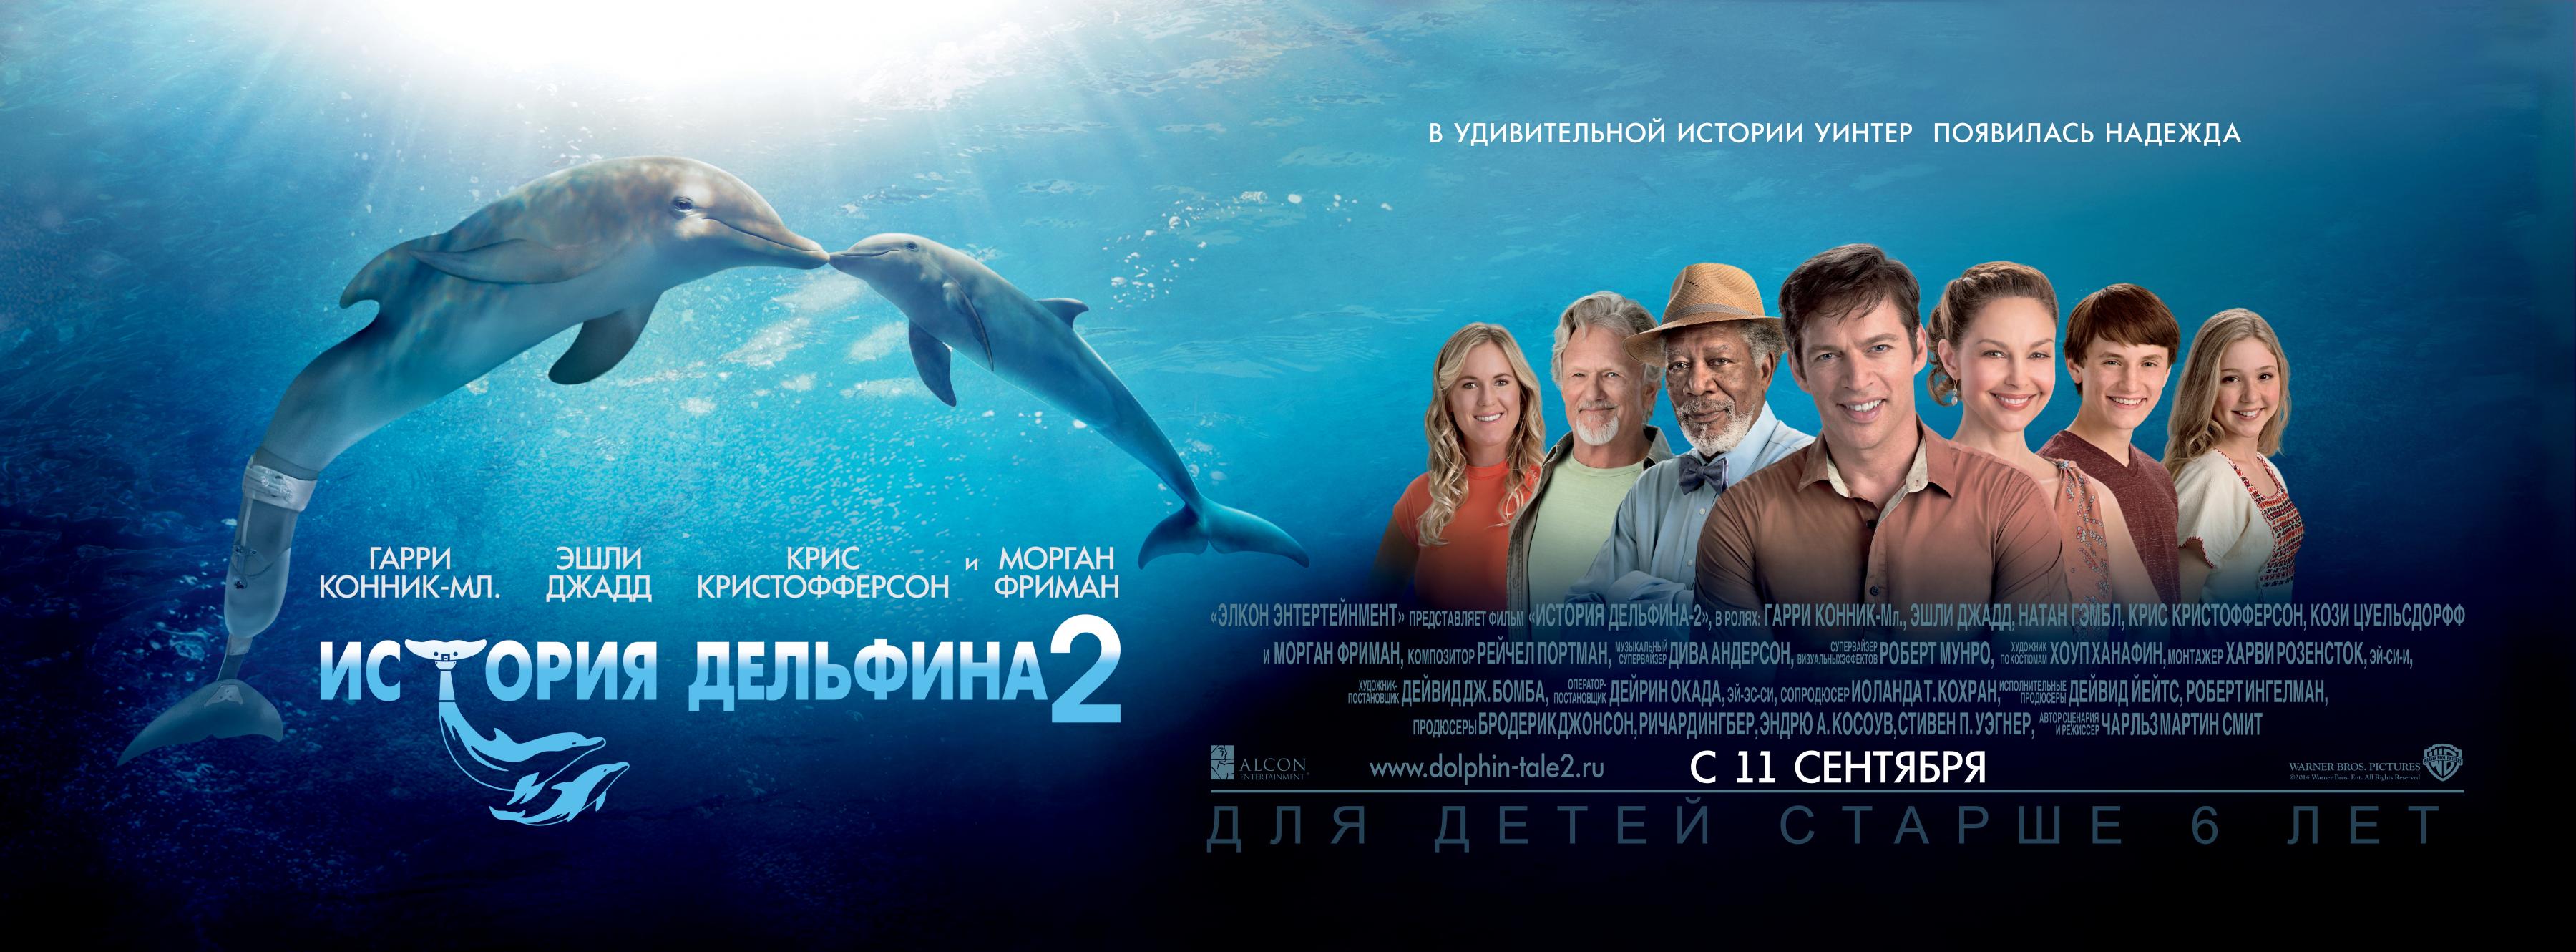 Постер фильма История дельфина 2 | Dolphin Tale 2